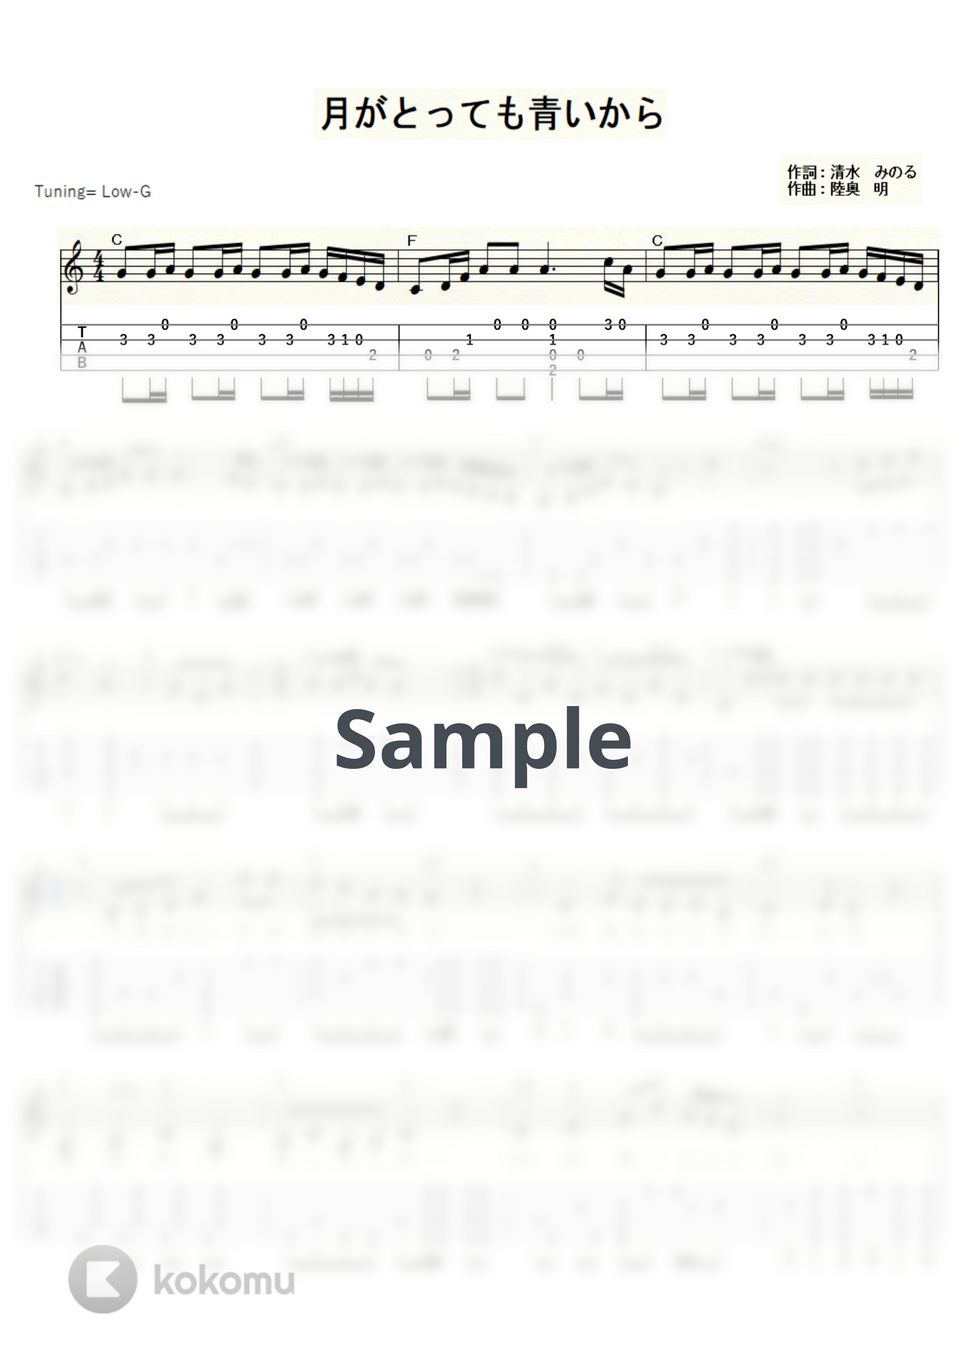 菅原 都々子 - 月がとっても青いから (ｳｸﾚﾚｿﾛ/Low-G/中級) by ukulelepapa